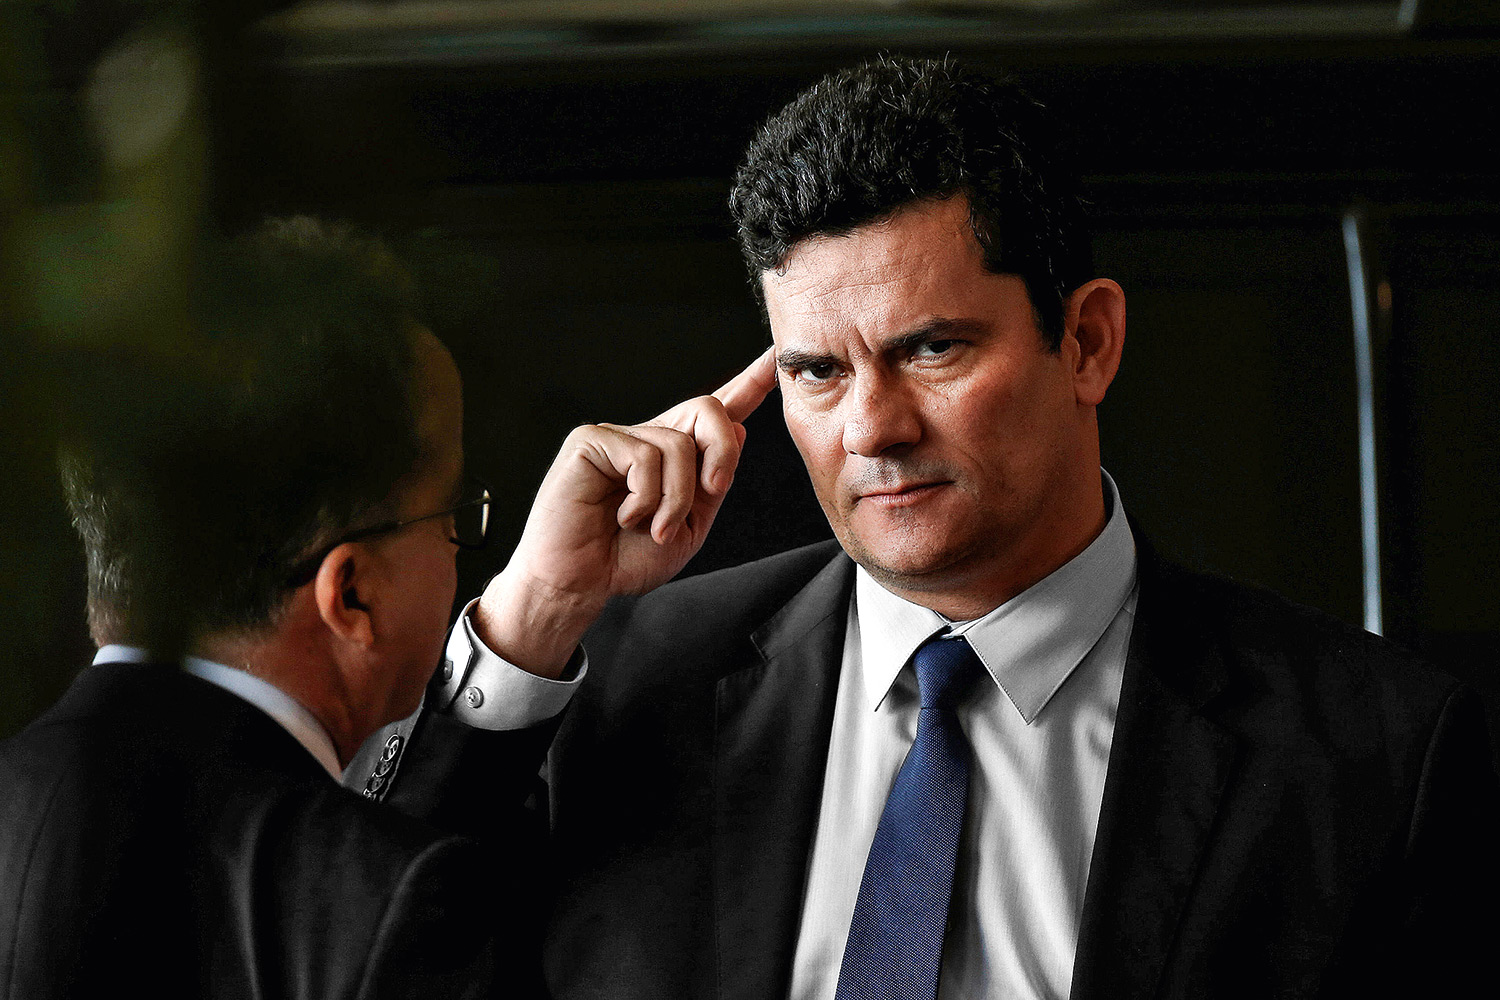 Sergio Moro fala sobre esforços contra a corrupção O ministro da Justiça e Segurança Pública, Sergio Moro, lamentou nesta quarta-feira (29) o resultado do Brasil nos indicadores da Transparência Internacional que medem a percepção sobre corrupção pelo mundo. Informações Agência Brasil.